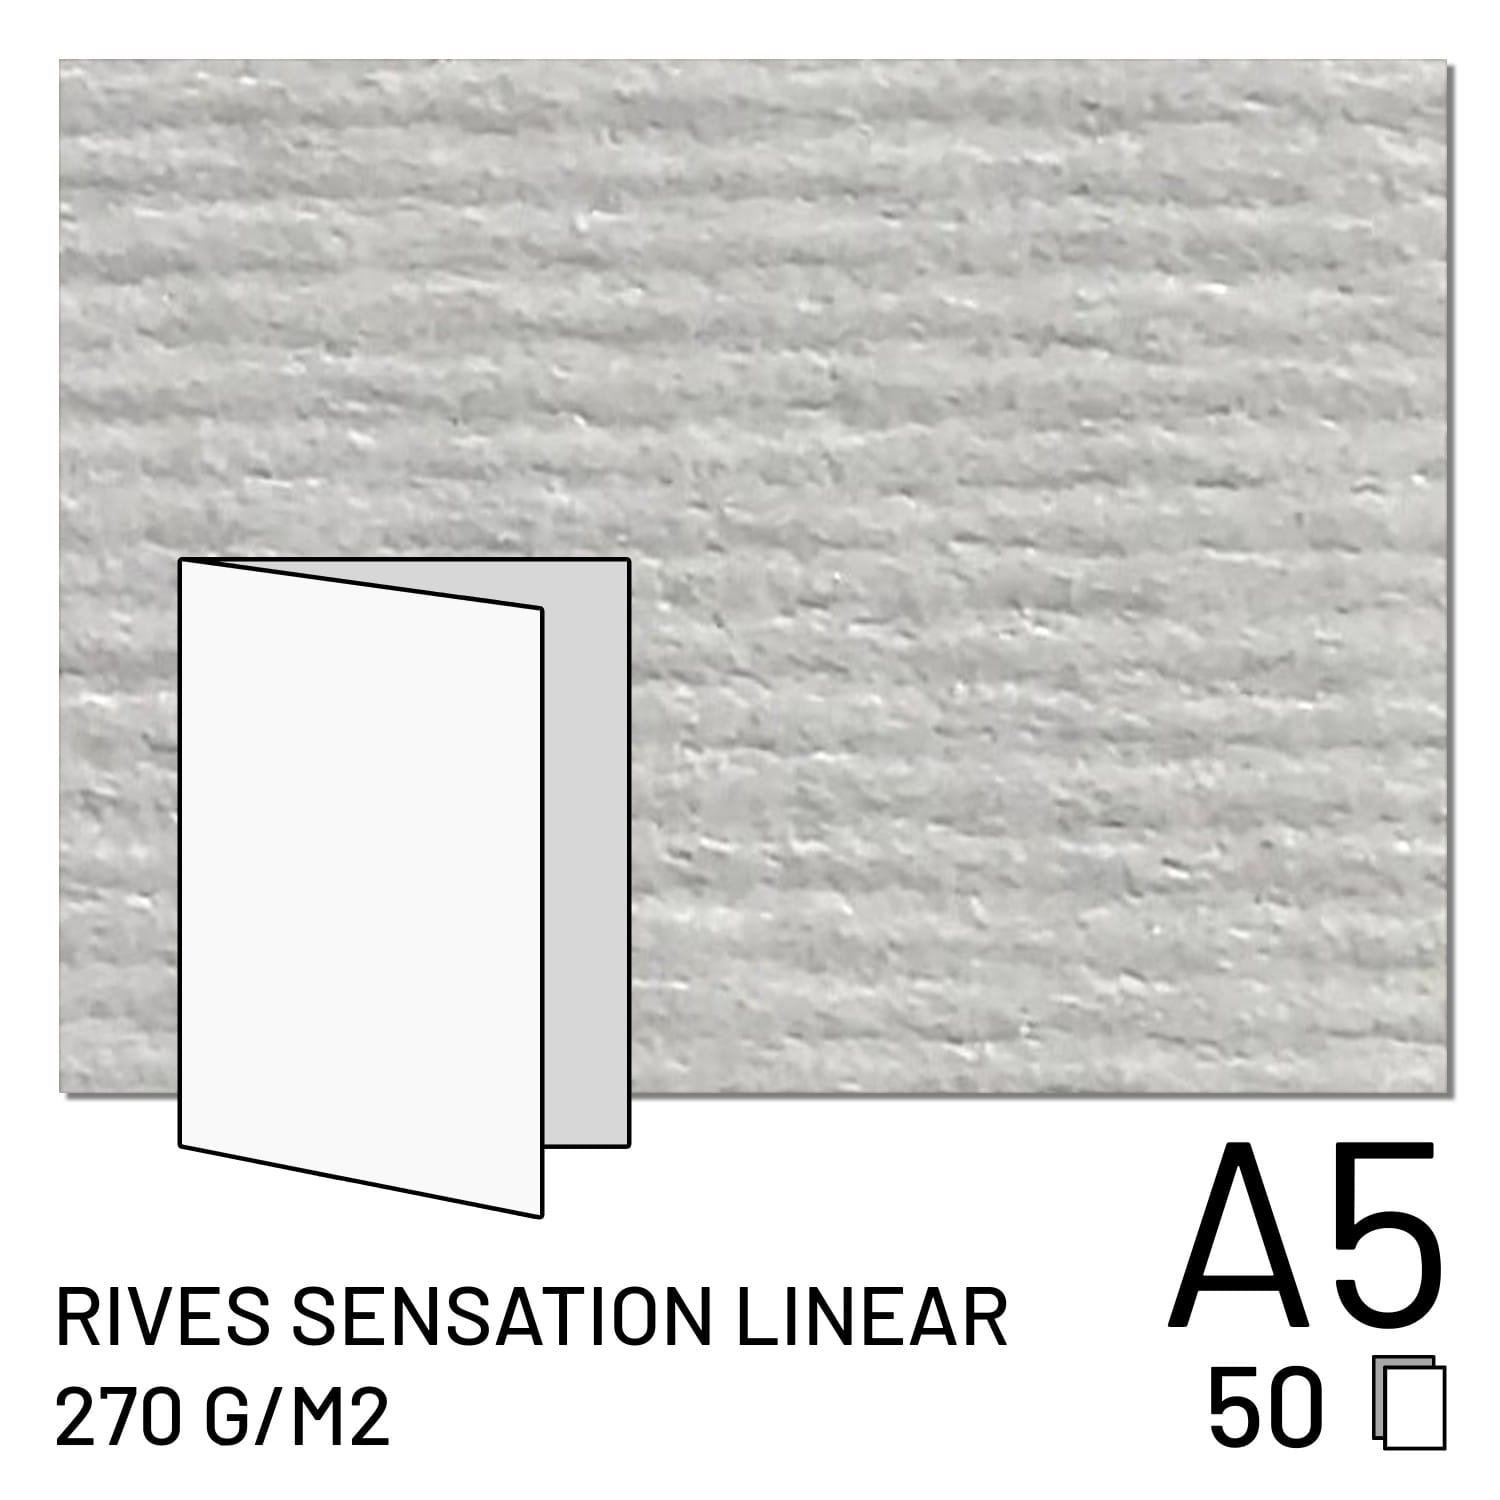 Papier FUJI Rives Sensation Linear 270g A4 plié / A5 2 volets (50 feuilles) (70100148094)